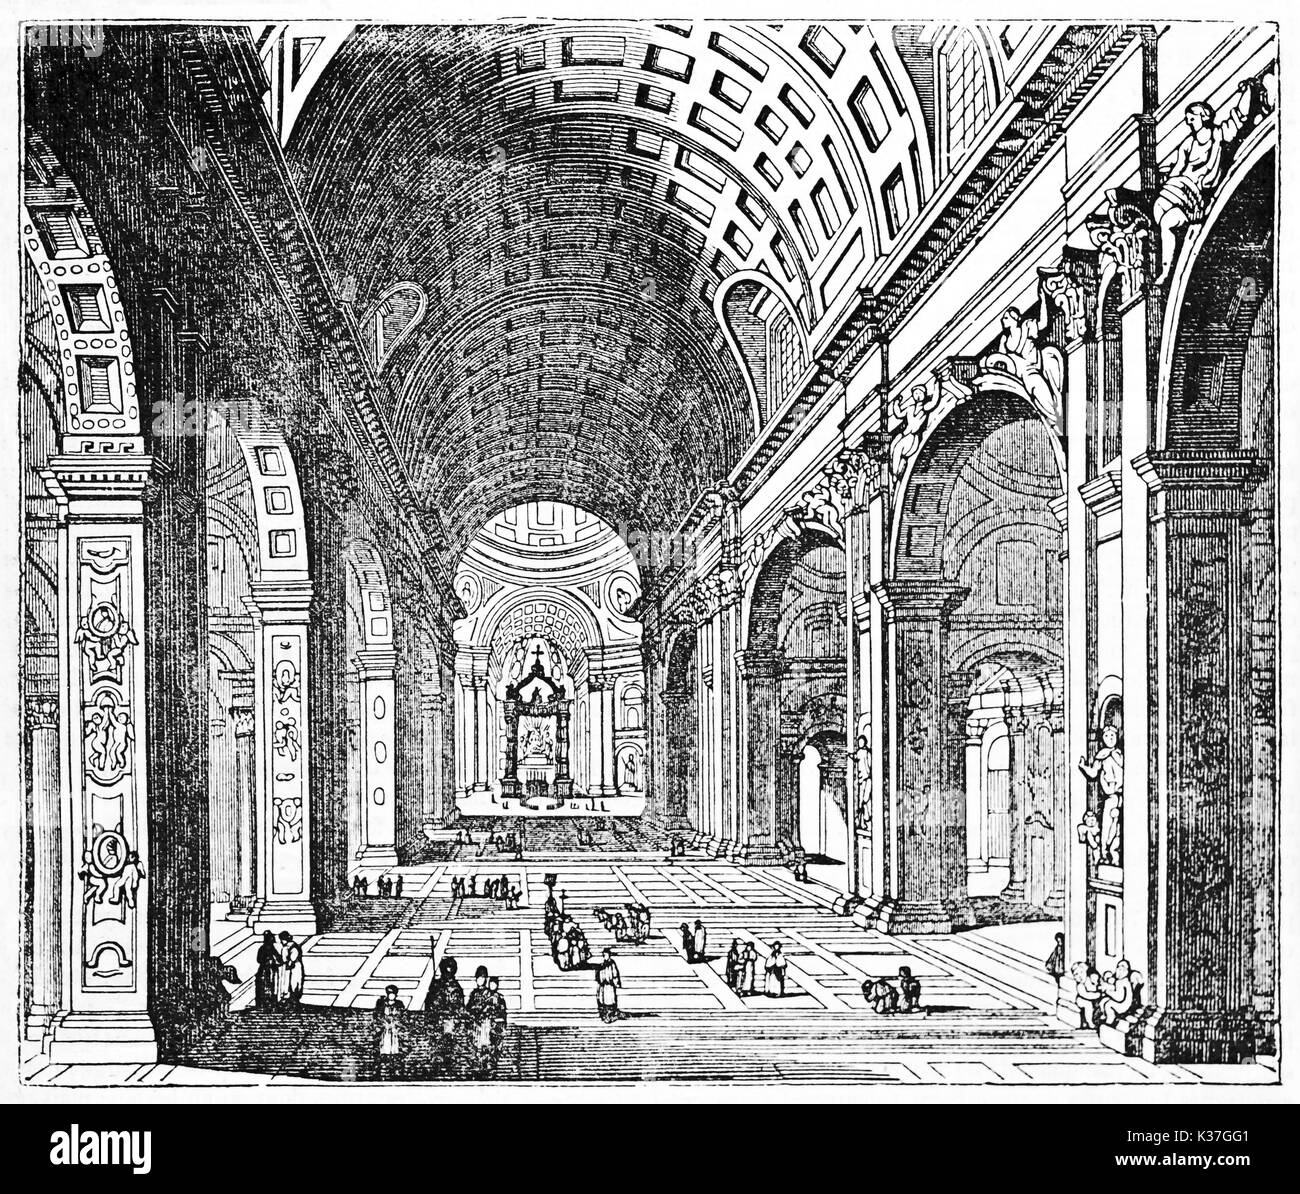 Super zentrale Perspektive der St. Peter Basilika Roms. Alte Illustration von unbekannter Autor auf Magasin Pittoresque Paris 1834 veröffentlicht. Stockfoto